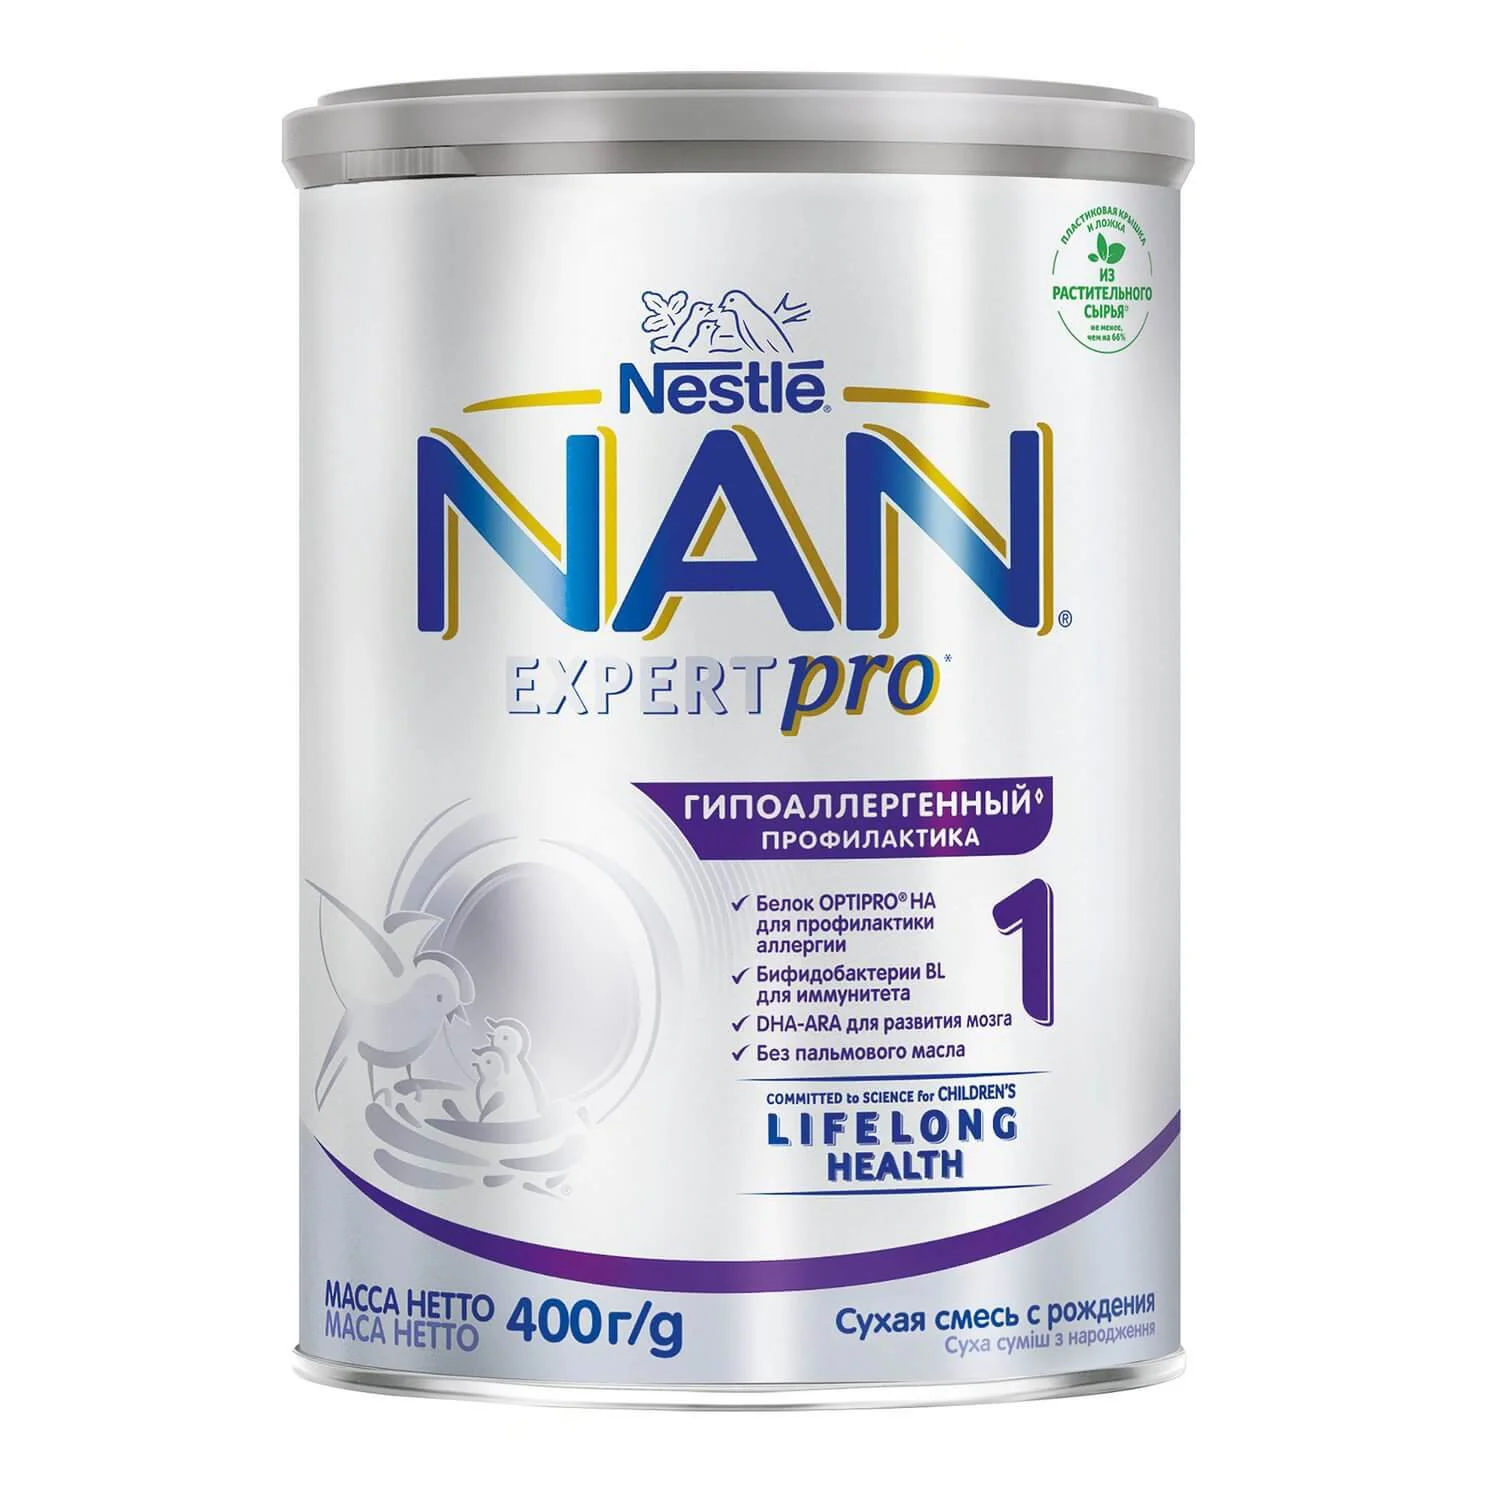 Детская молочная смесь Nestle Nan 1 Гипоаллергенный (0+ мес.), 400 г